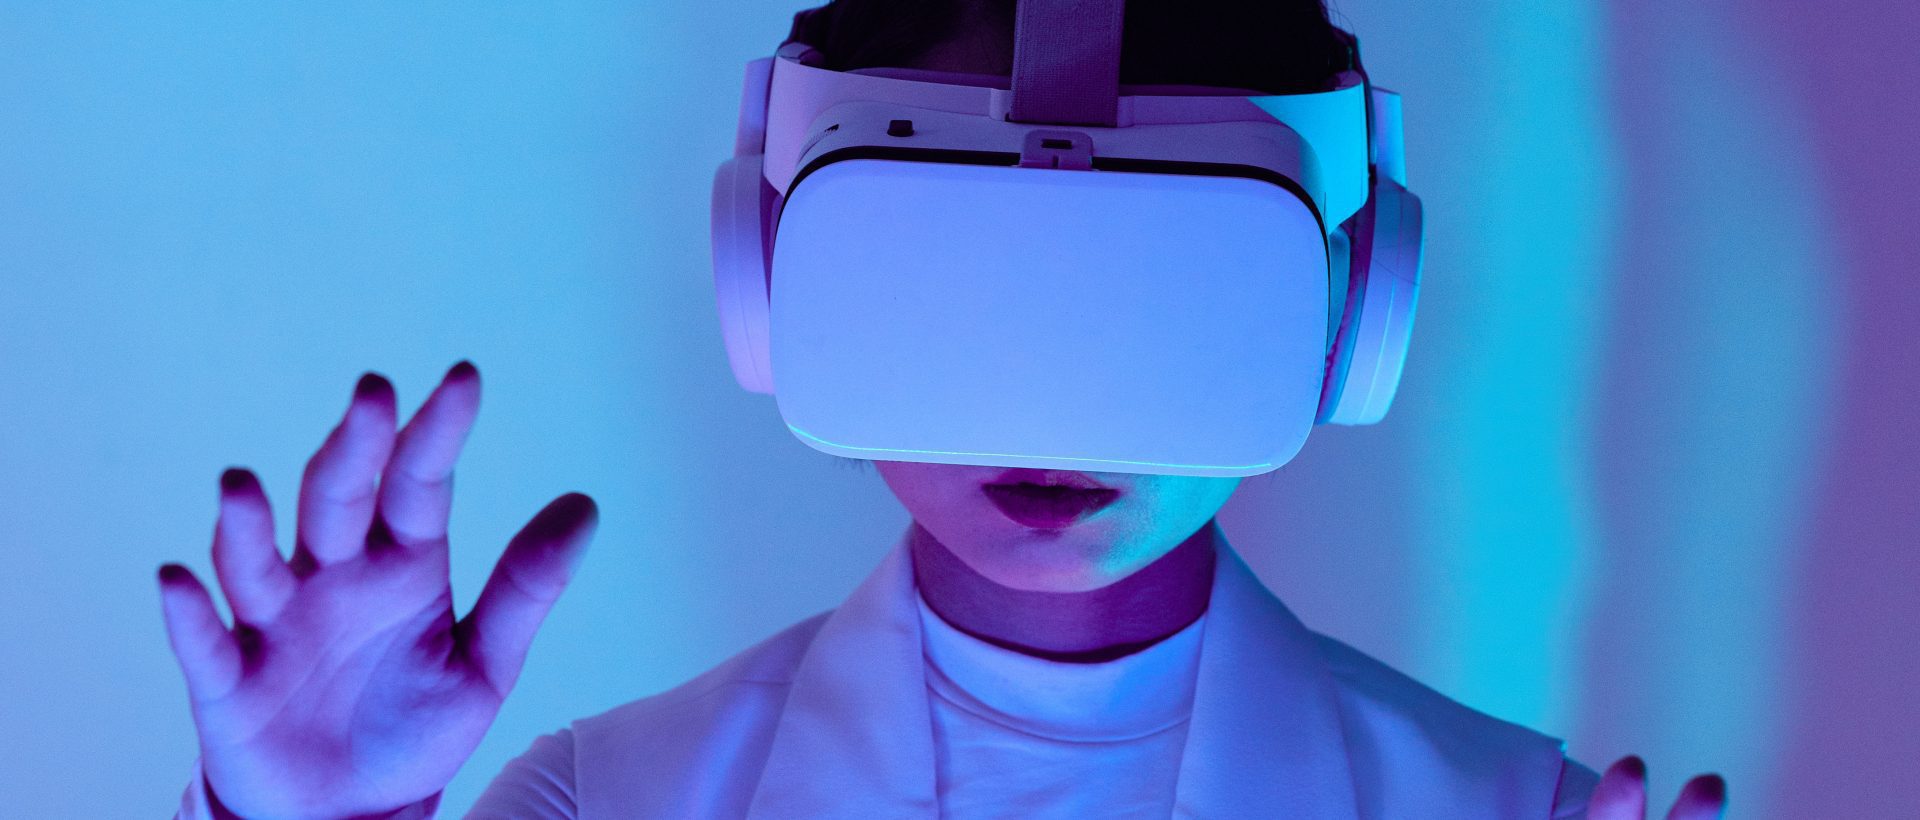 La réalité virtuelle pour traiter les troubles sexuels